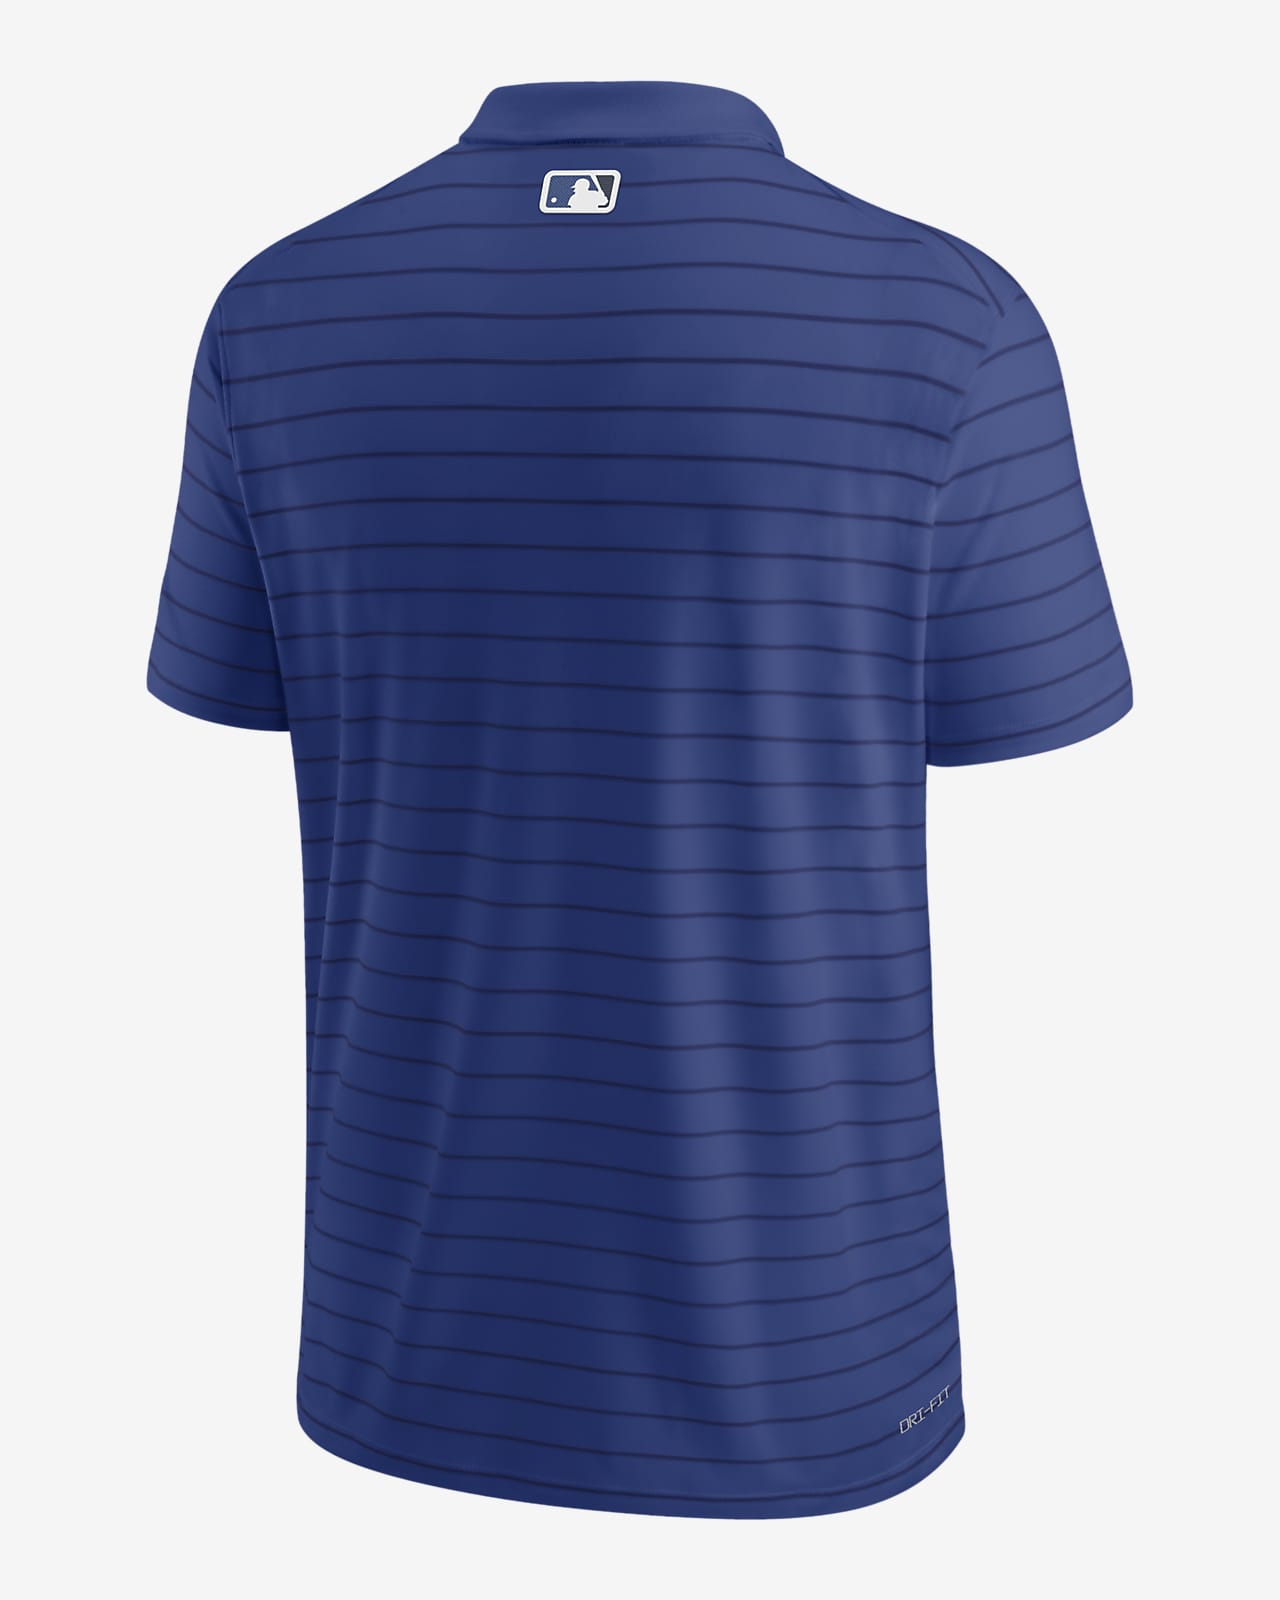 Nike Dri-FIT Striped (MLB Toronto Blue Jays) Men's Polo. Nike.com